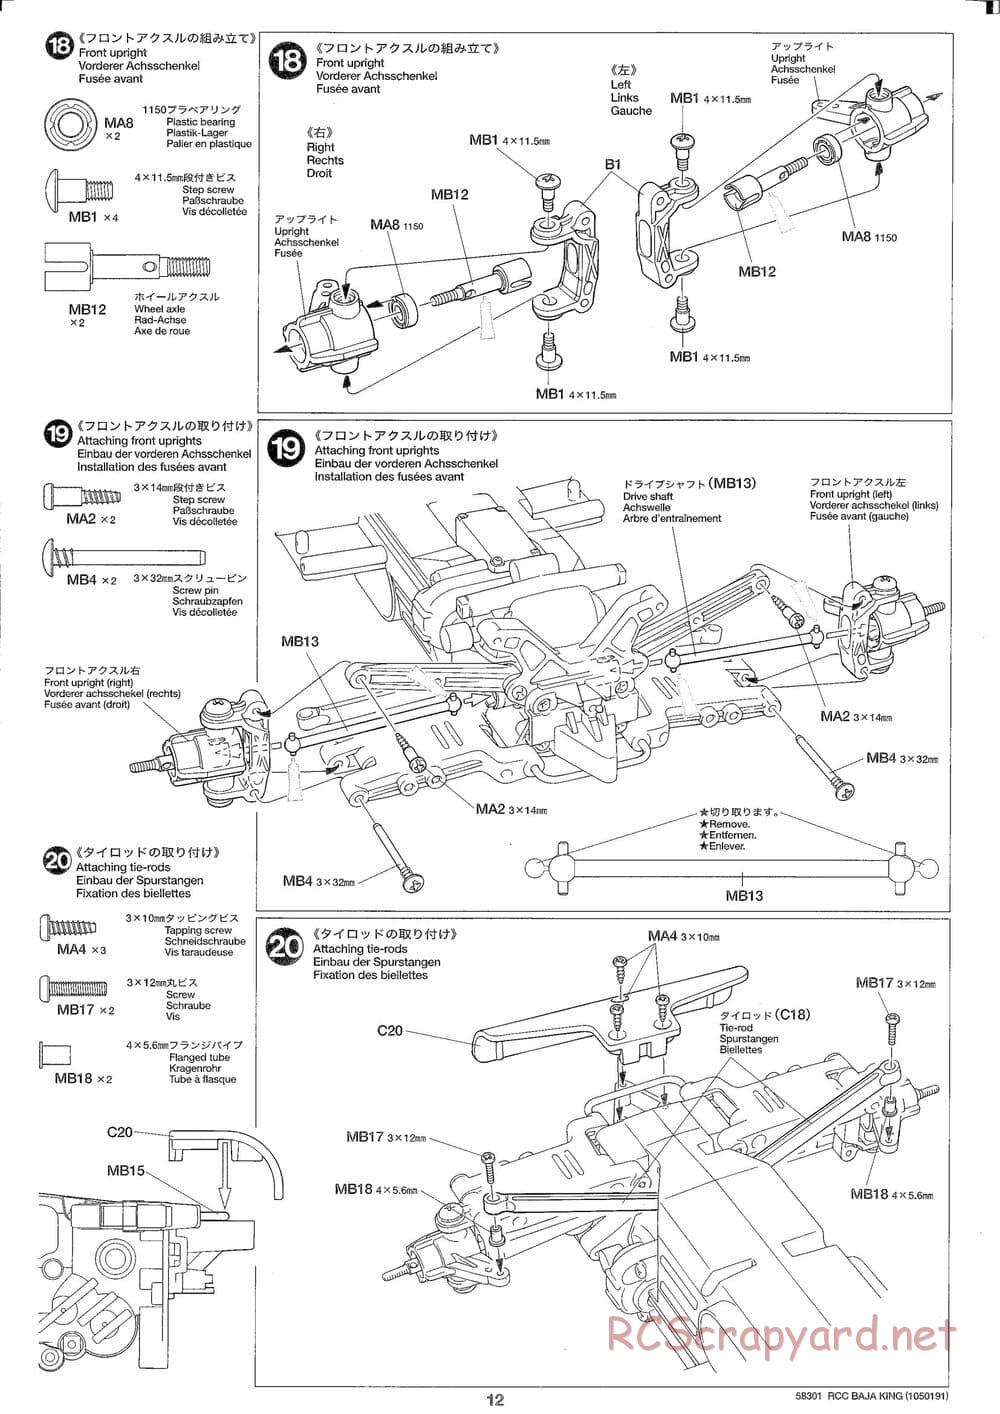 Tamiya - Baja King - TL-01B Chassis - Manual - Page 12